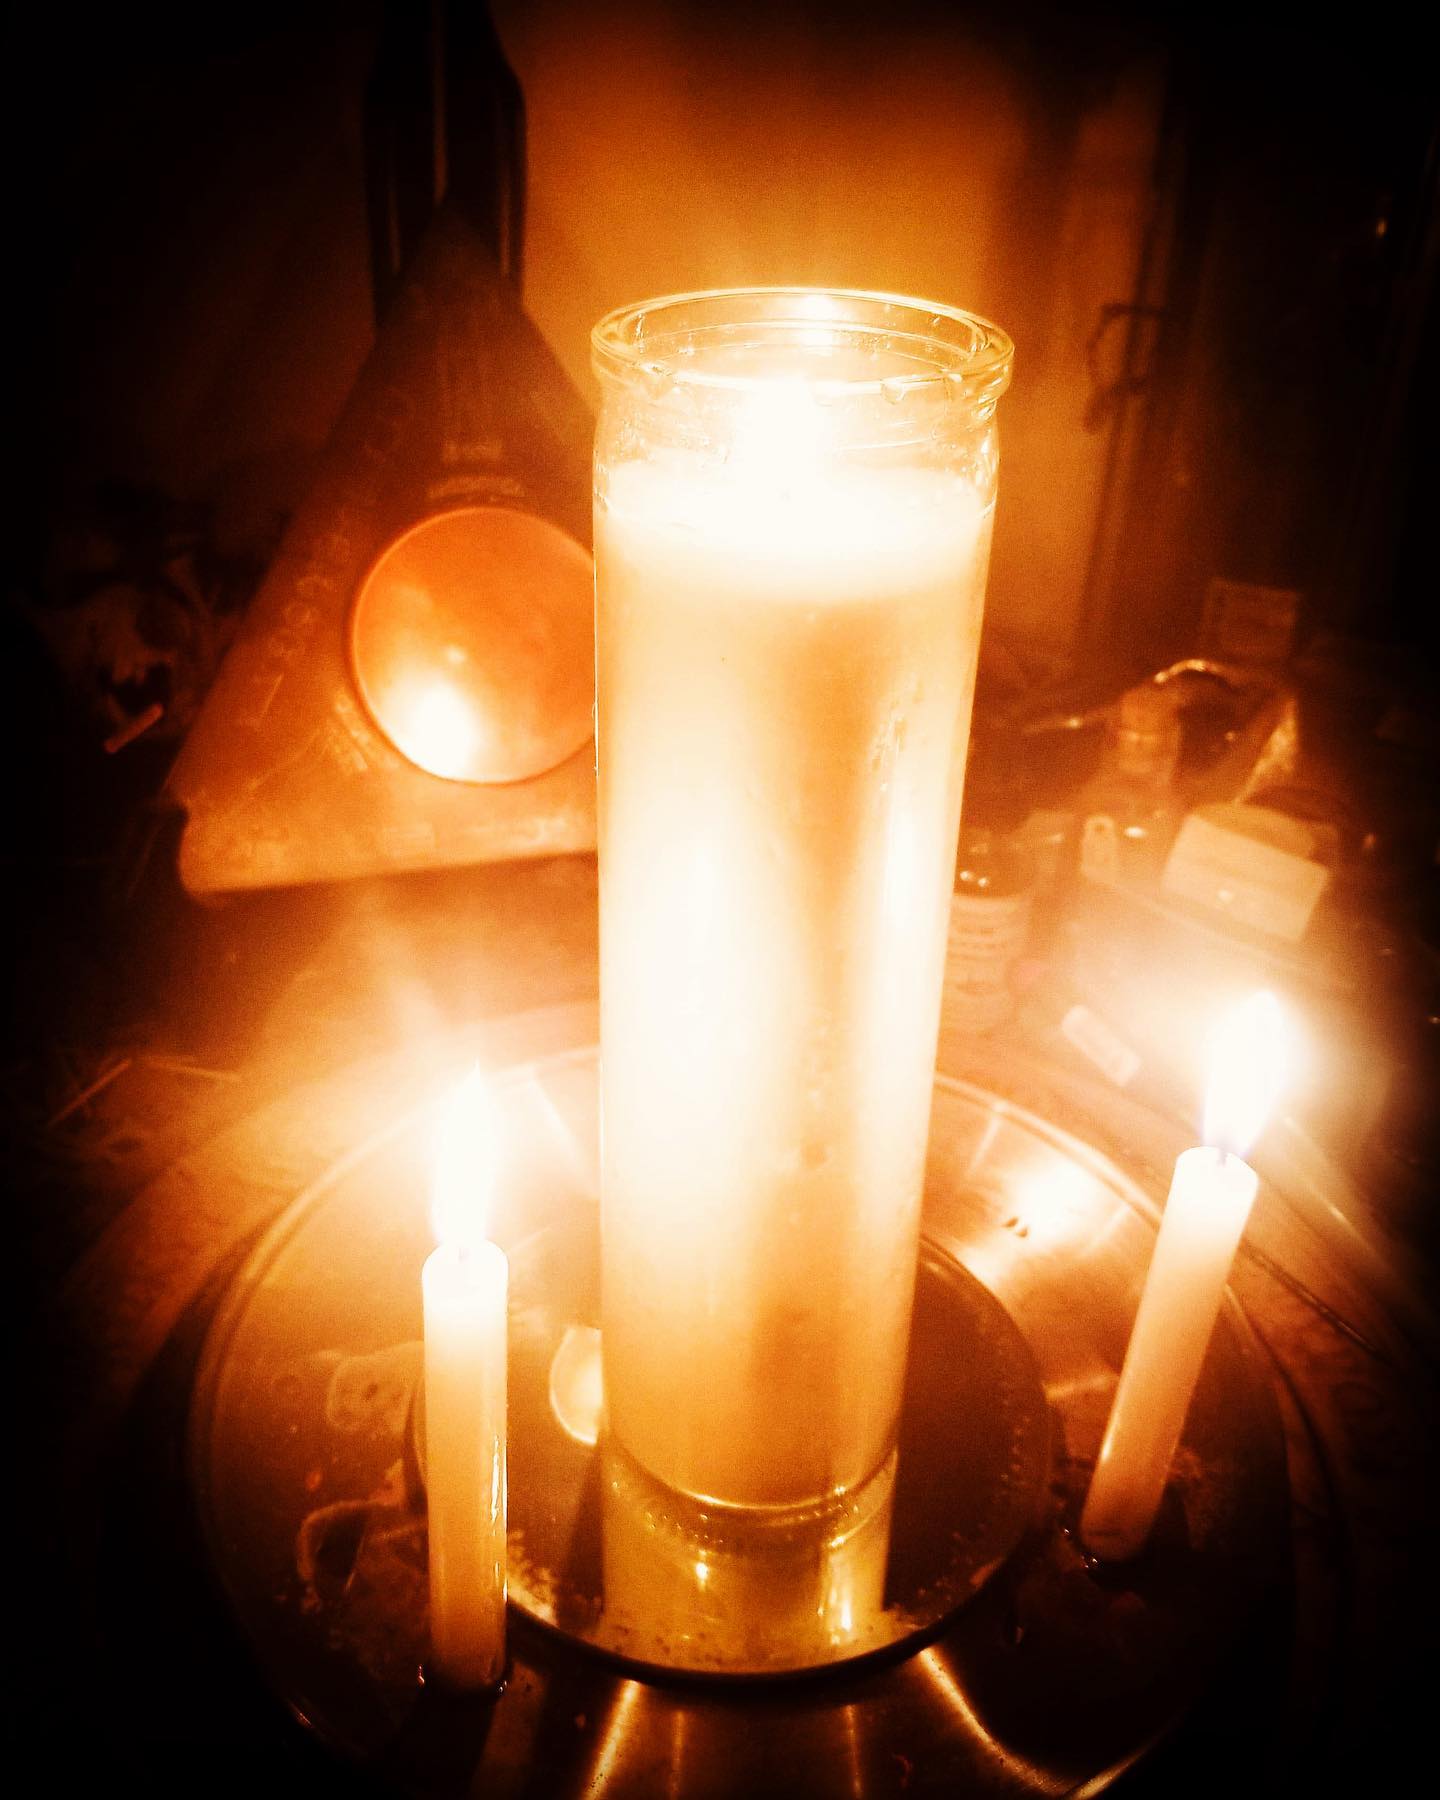 Candle Magic